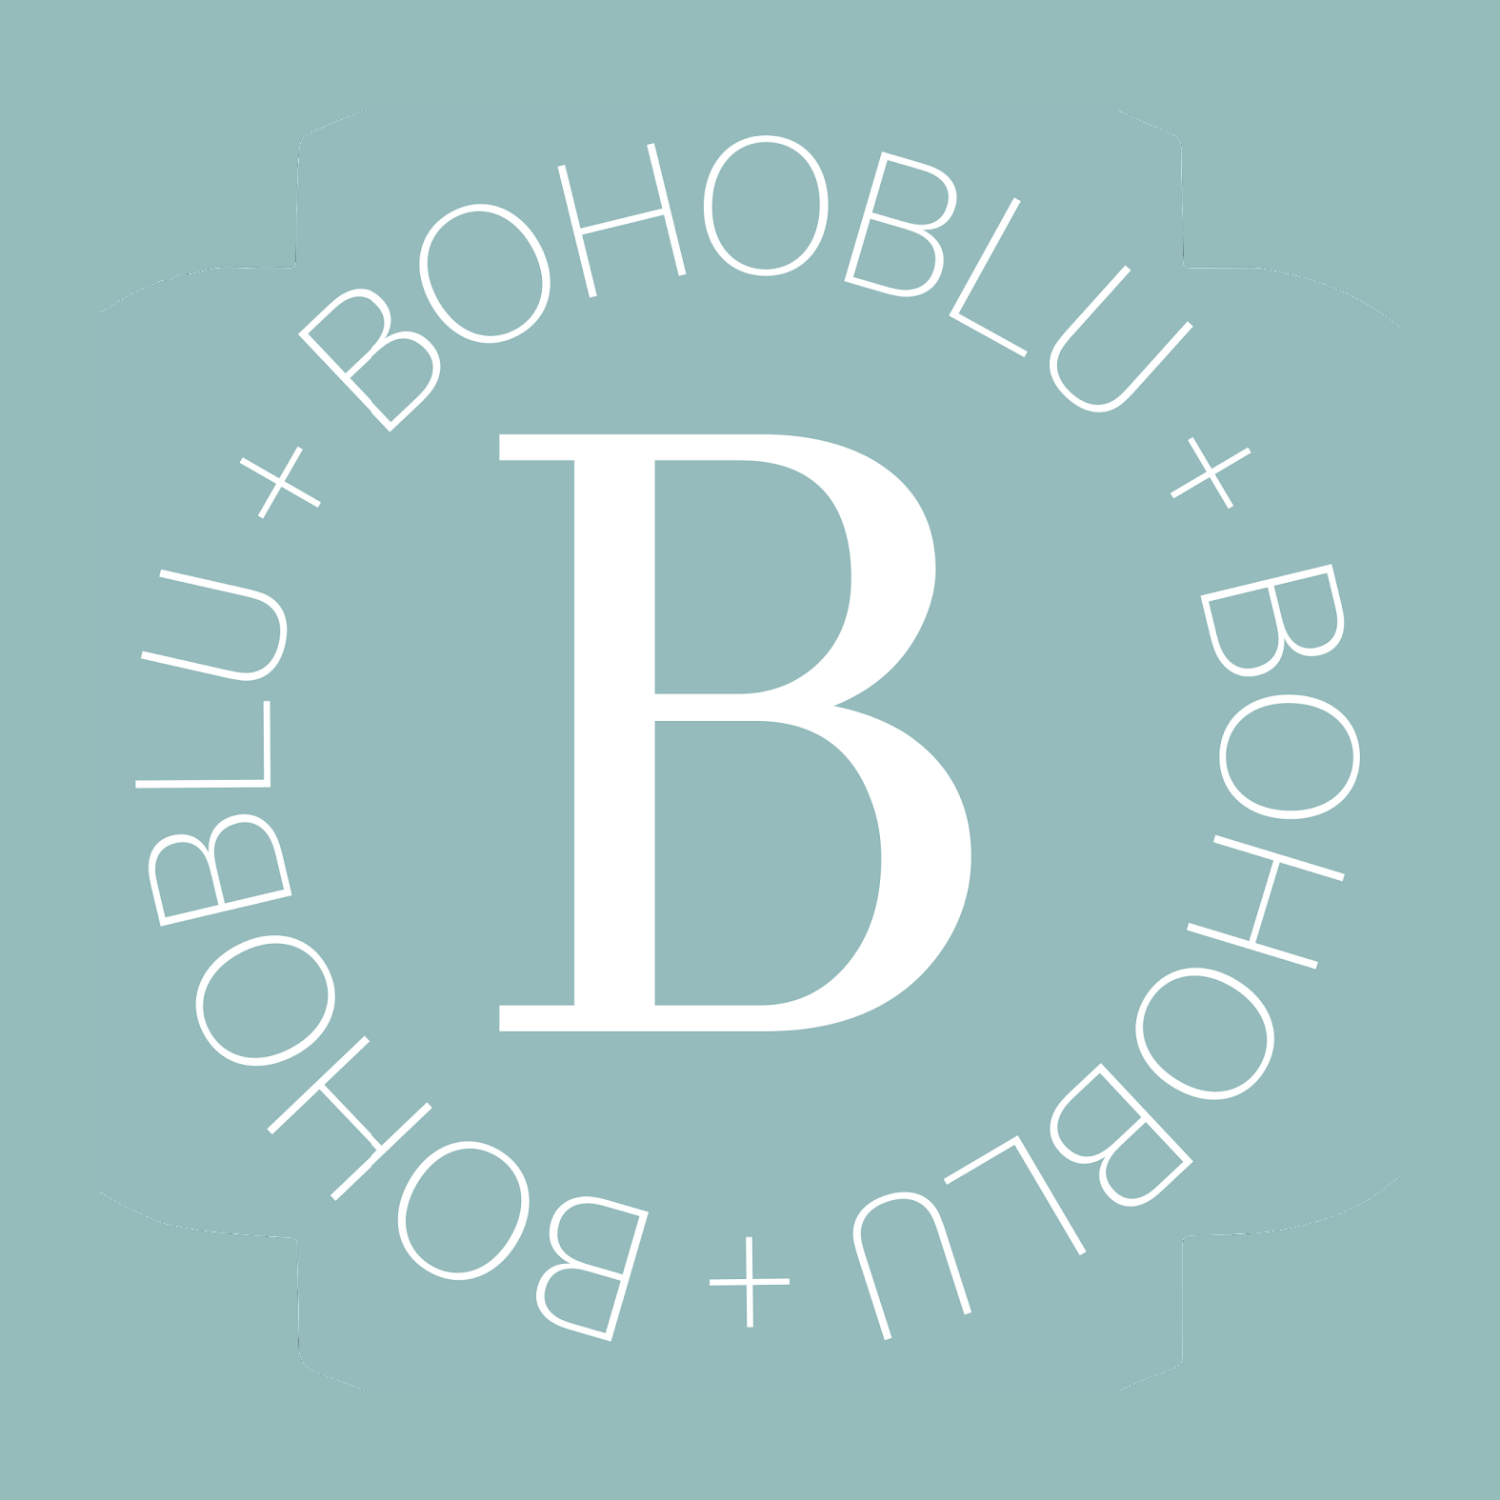 BohoBlu logo updated 4.27.2022